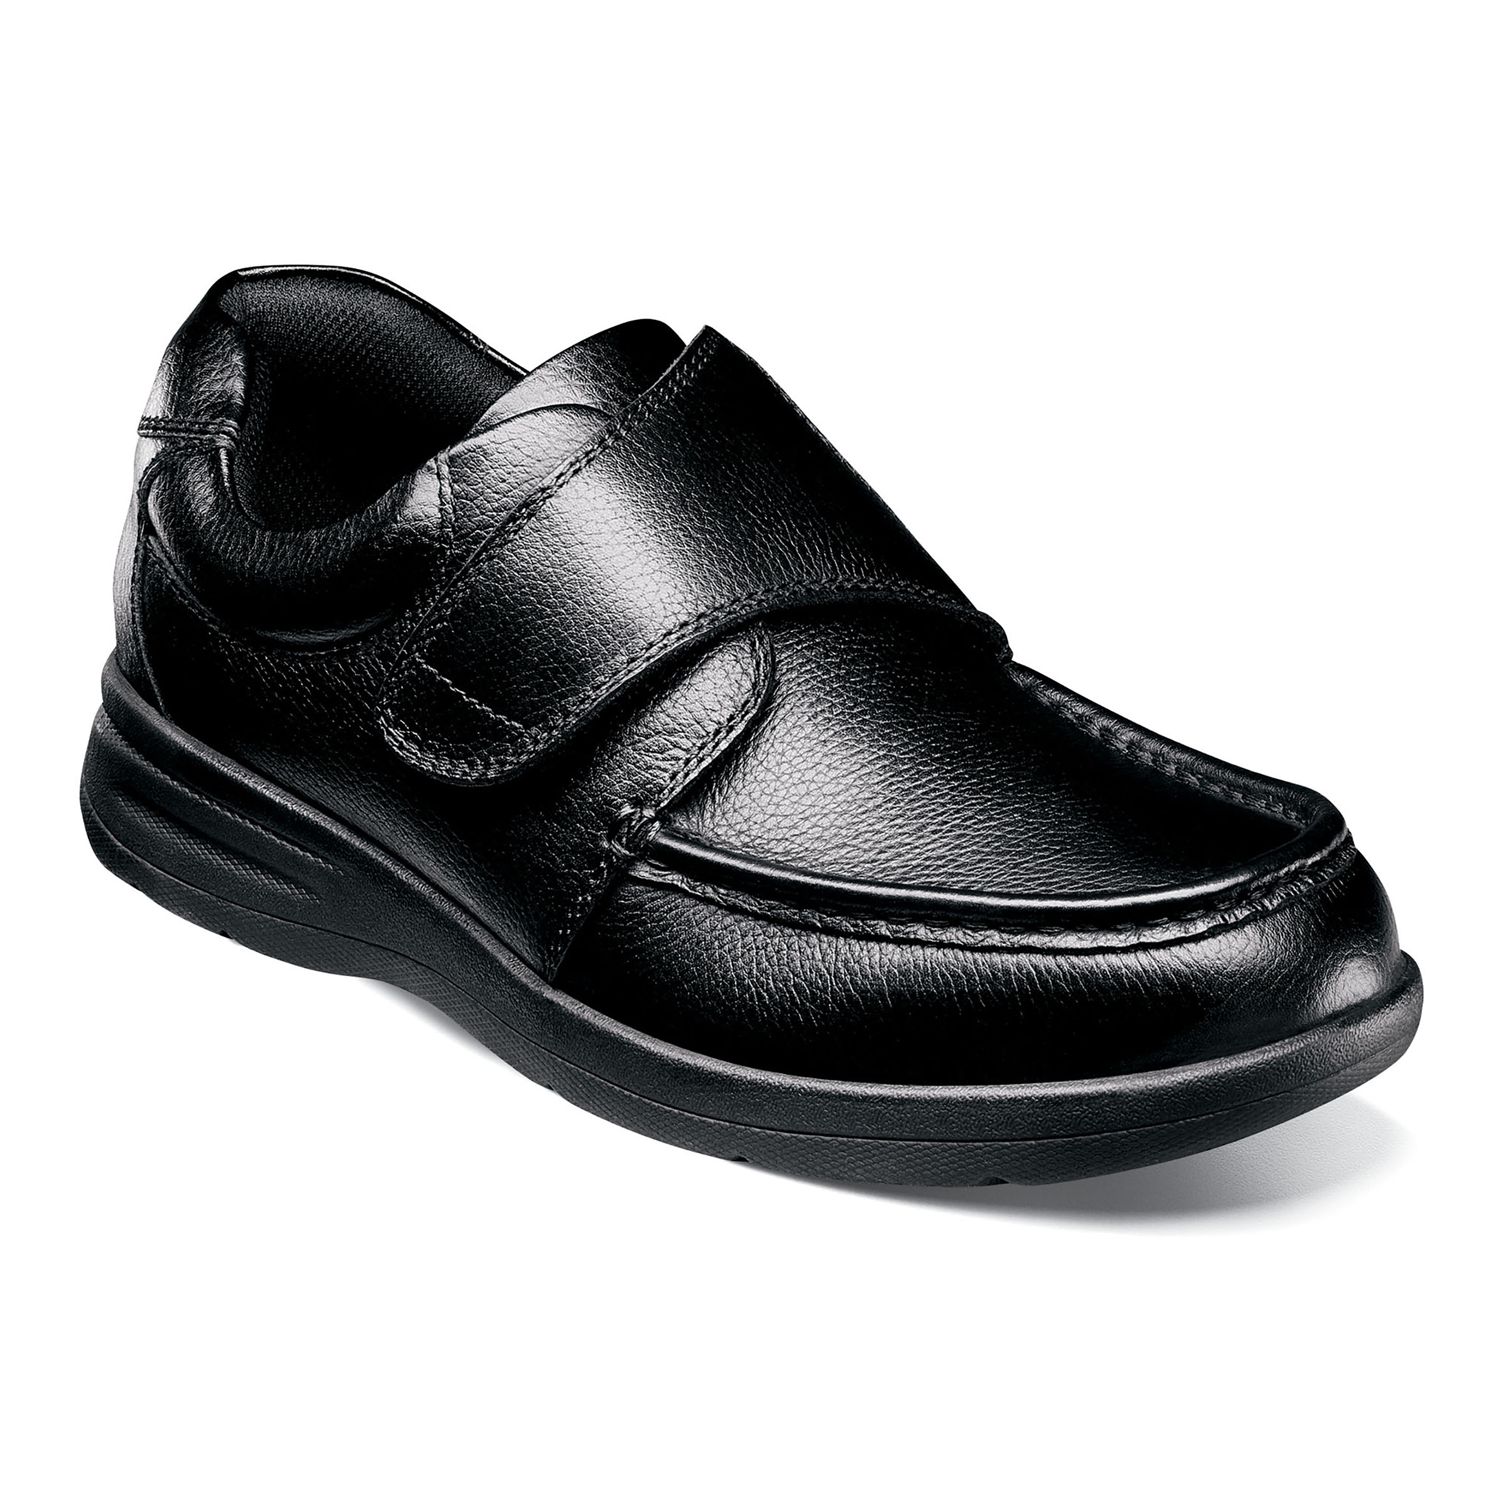 nunn bush cam men's moc toe casual slip on shoes